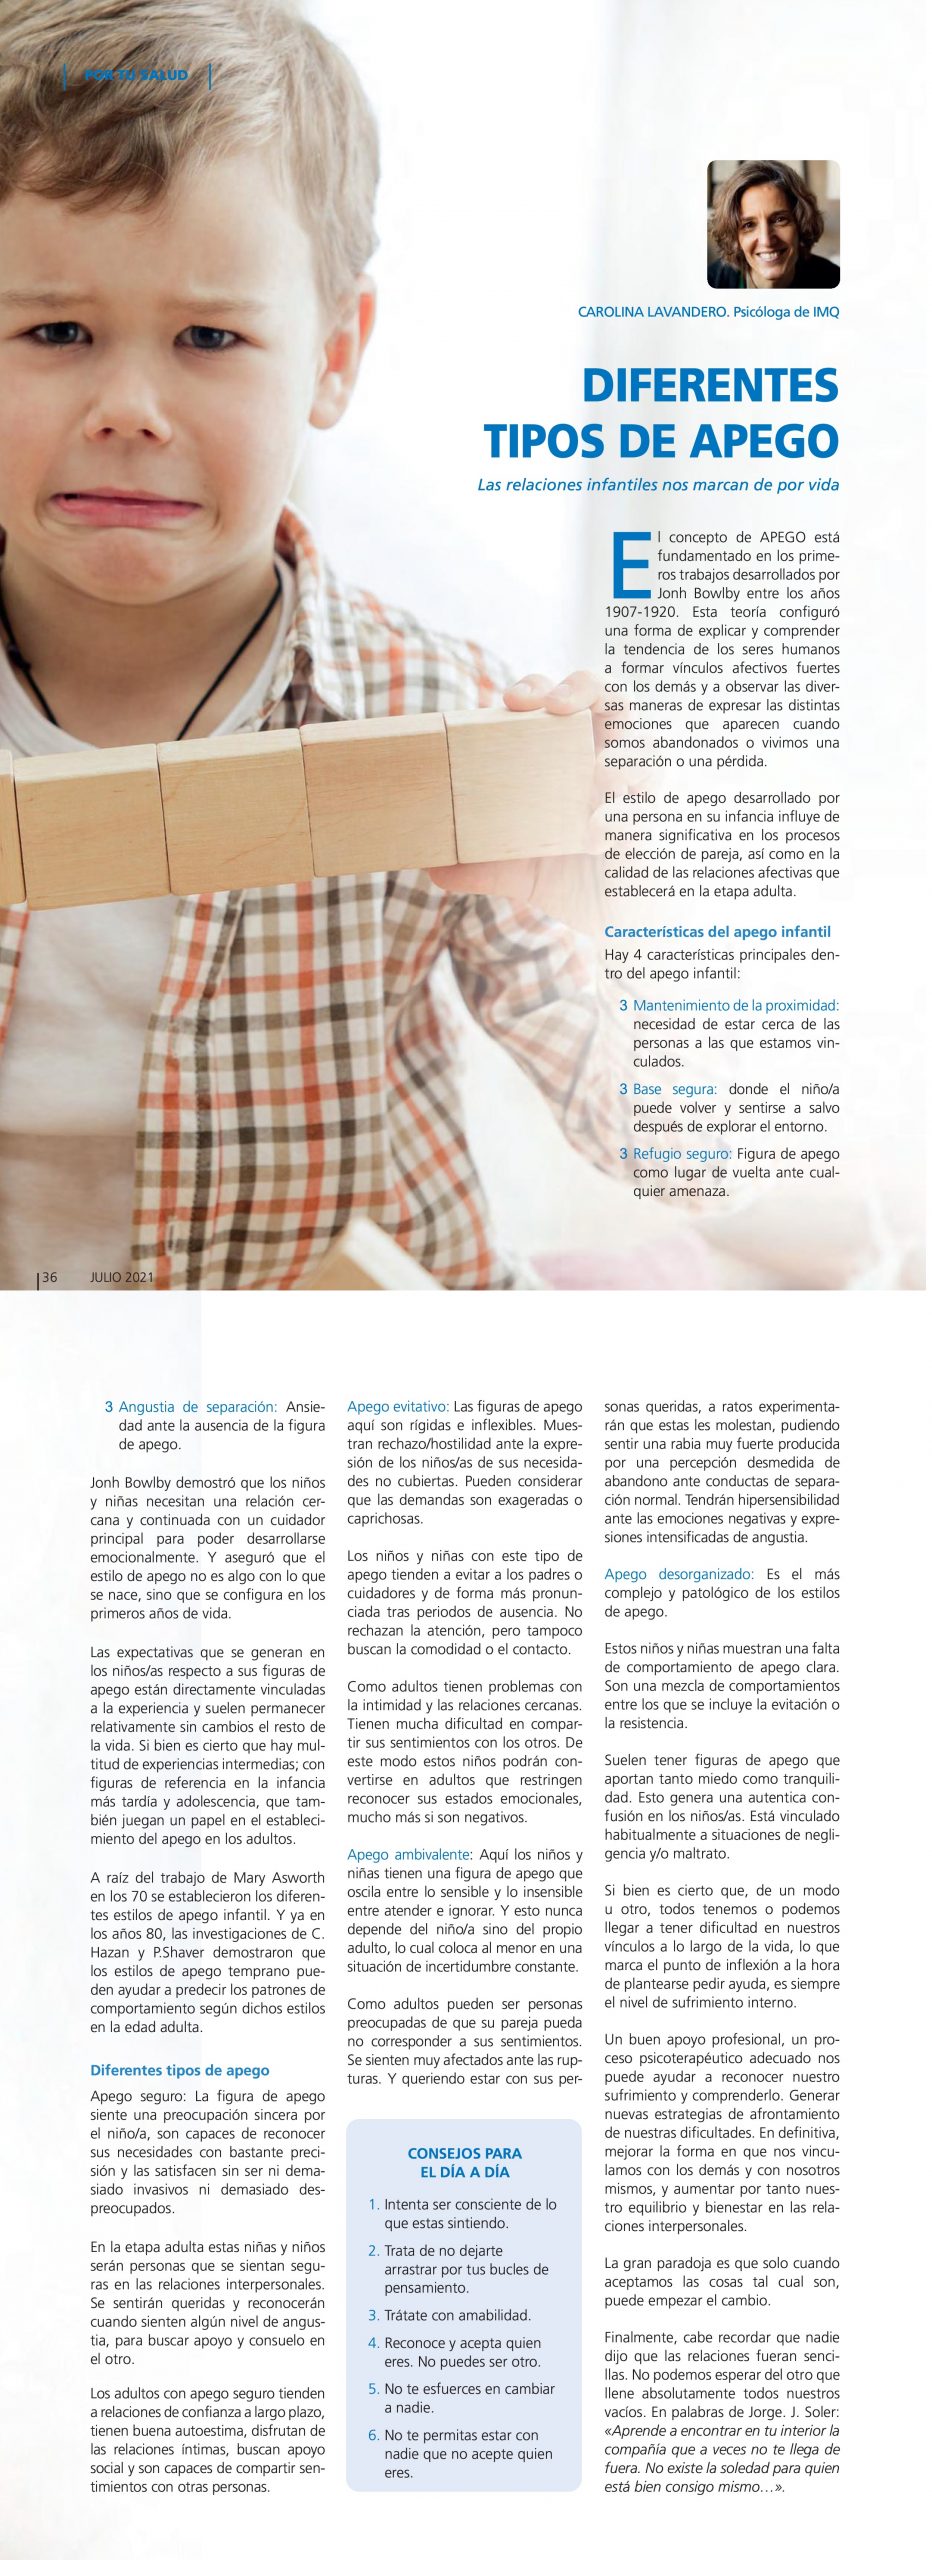 Artículo publicado en la Revista IMQ, «Vivir Sano»: Diferentes tipos de apego